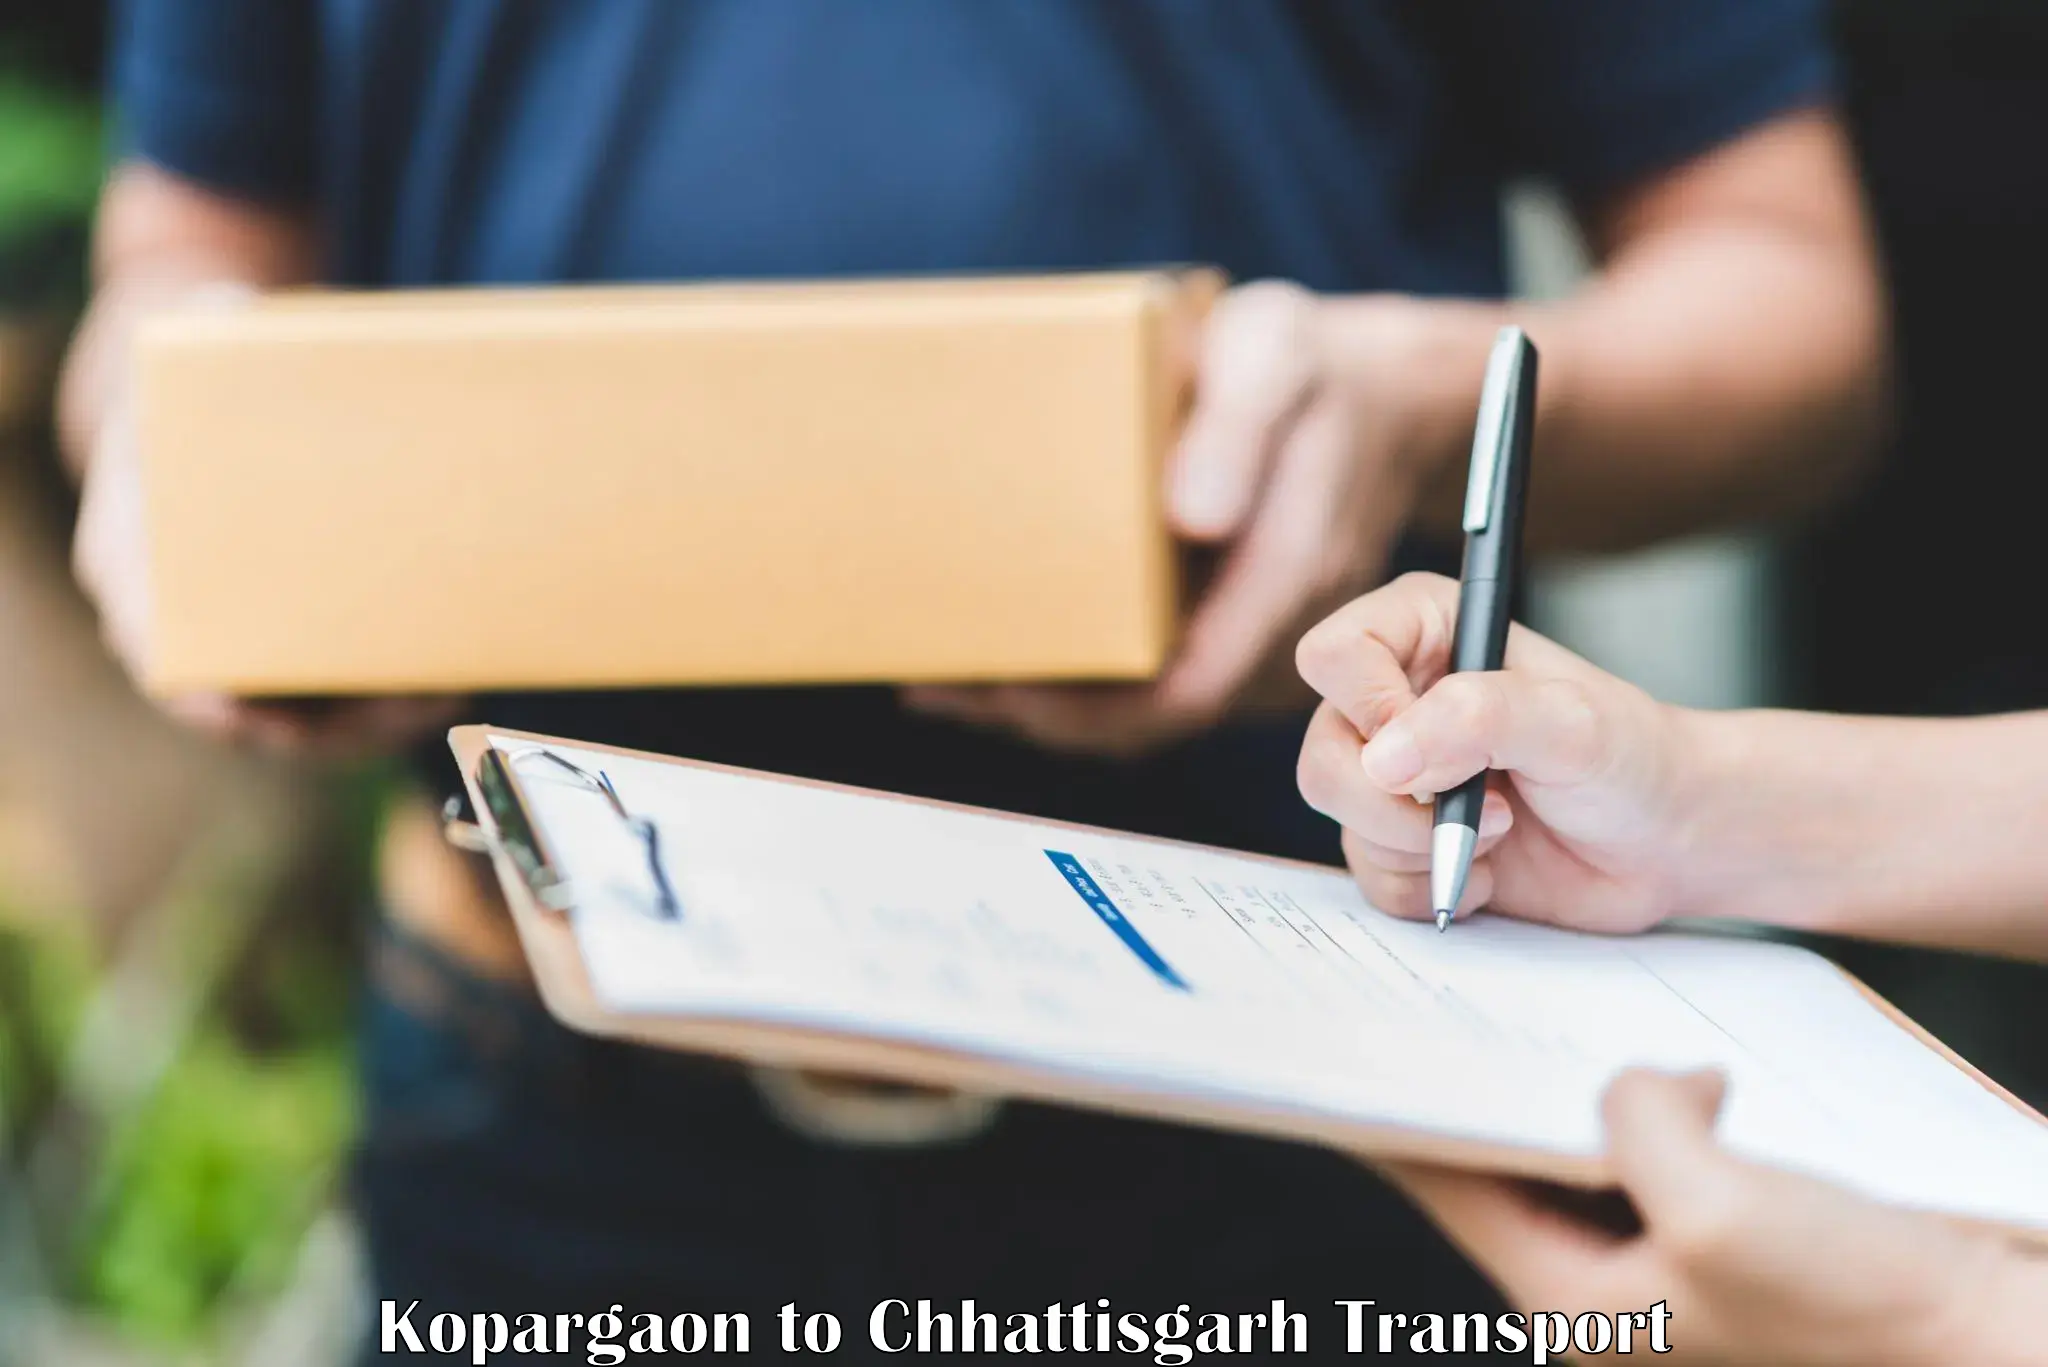 Goods transport services Kopargaon to Bijapur Chhattisgarh